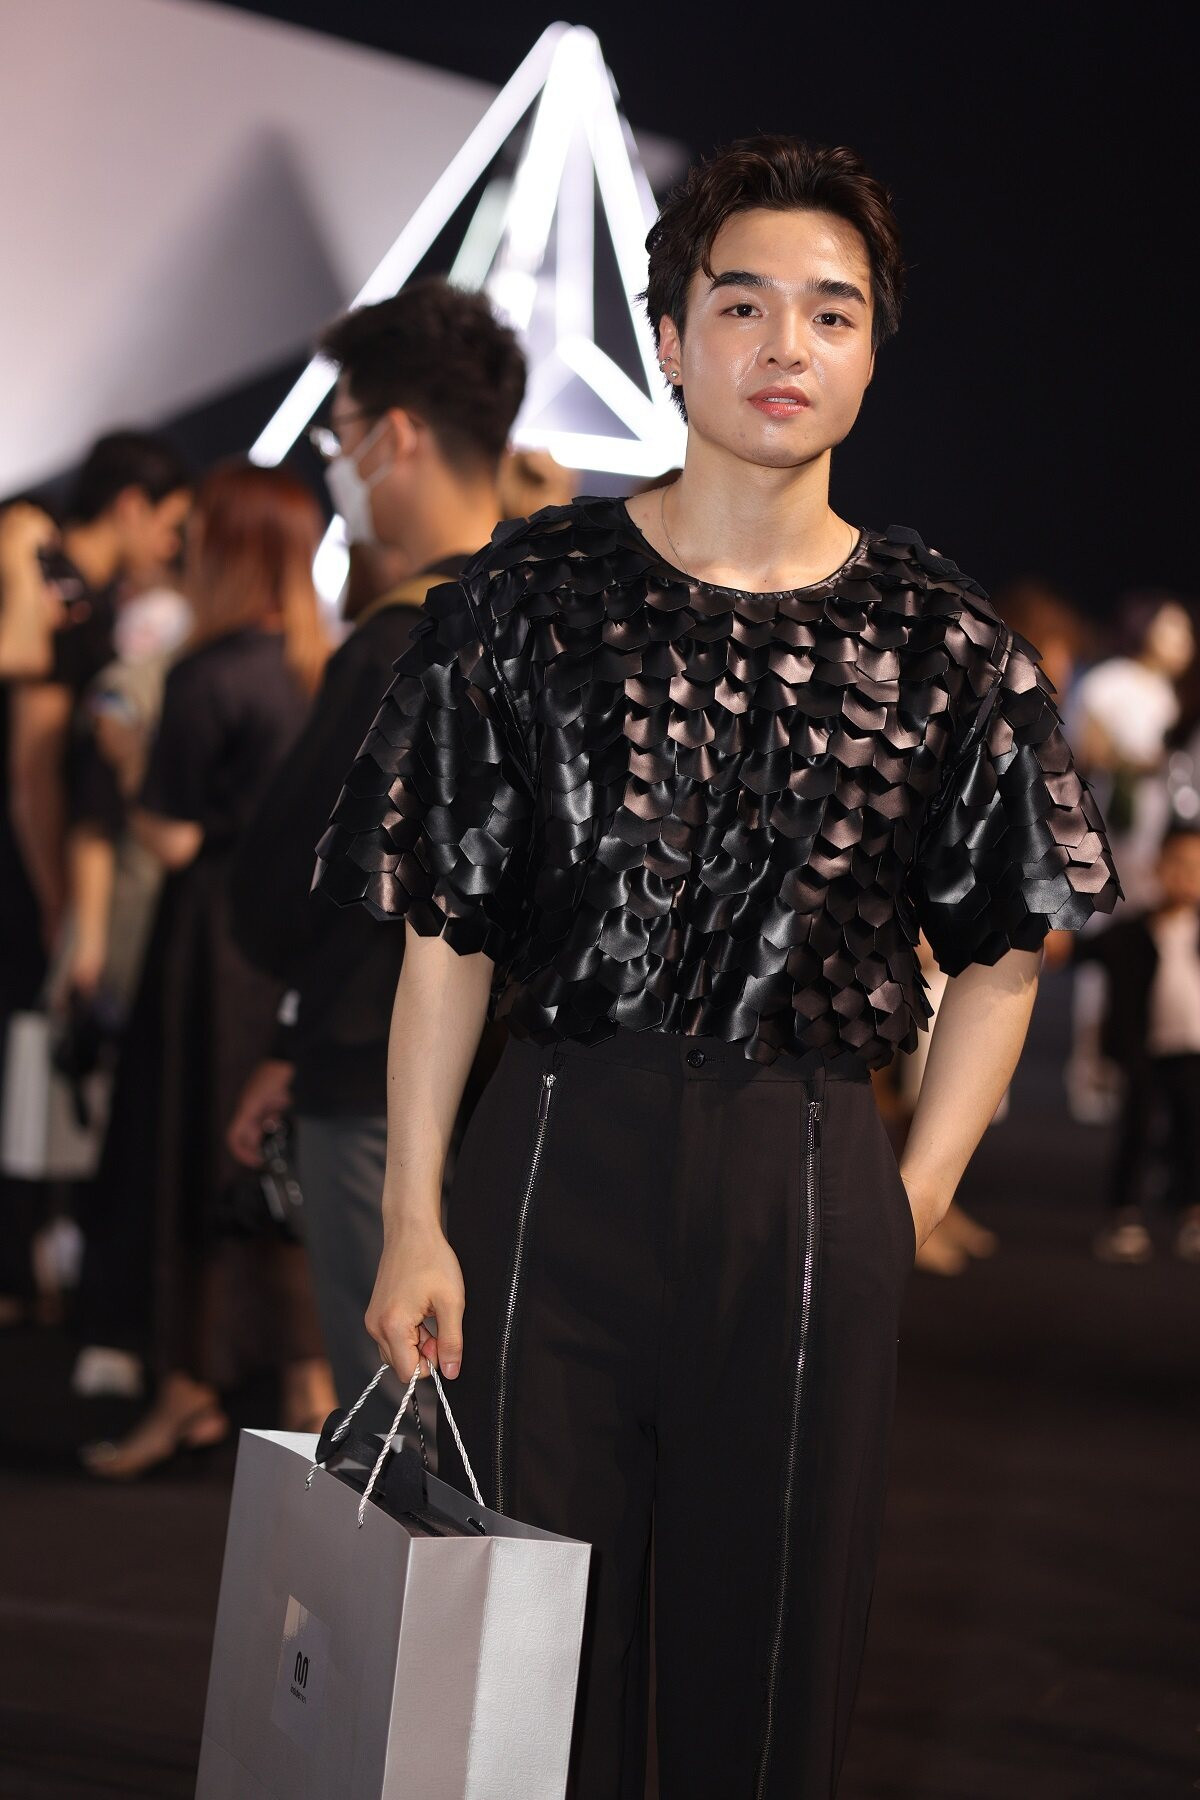 Hoa hậu H'Hen Niê diện đồ cực chất tham gia đêm diễn thời trang tại Hà Nội - 9